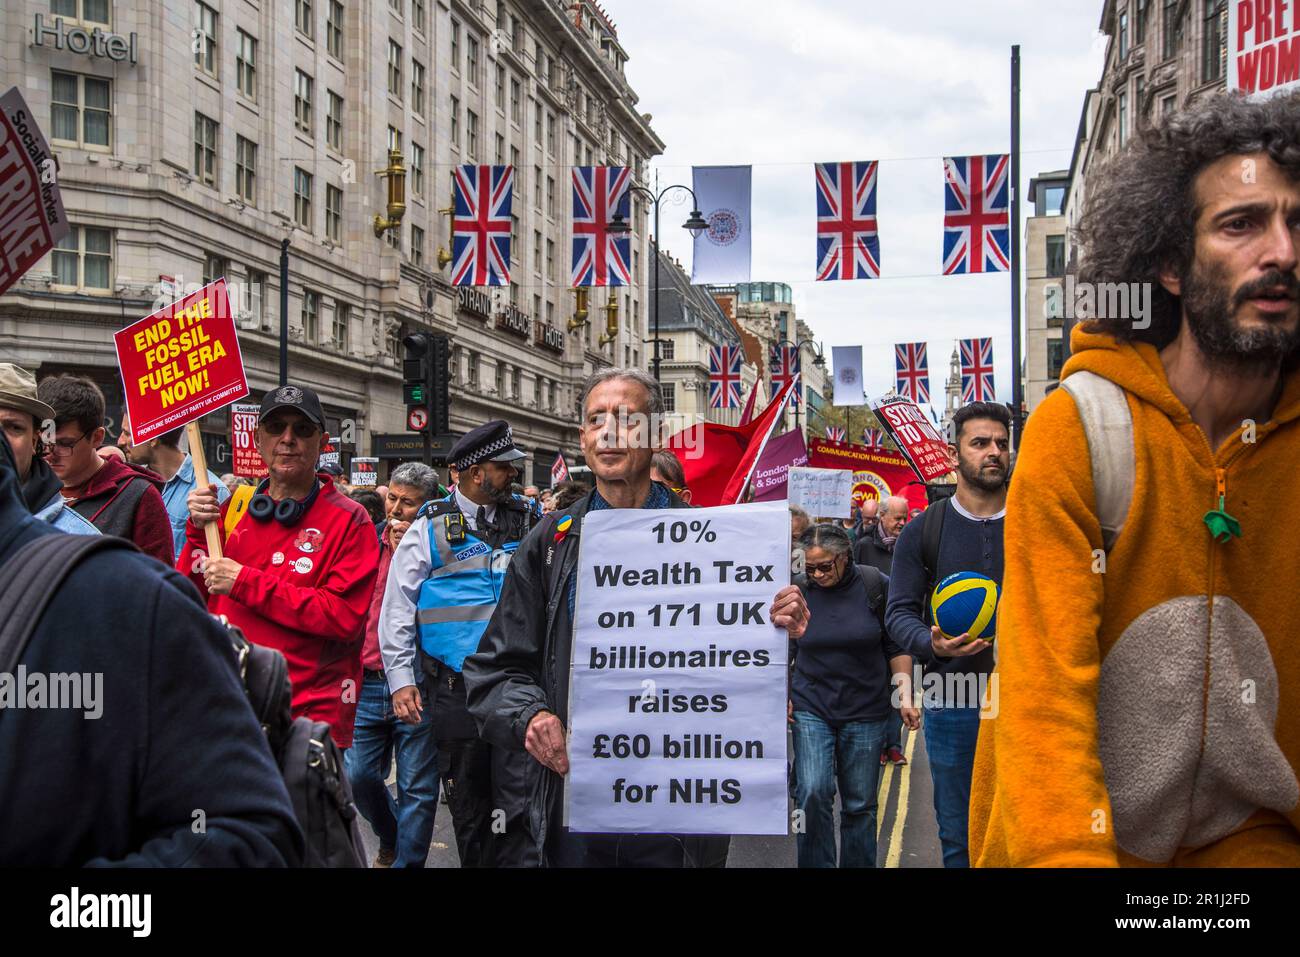 L'attivista Peter Tatchell porta il cartellone sulla Wealth Tax per i miliardari, May Day International Workers' Day Rally, Londra, Inghilterra, Regno Unito, 01/0 Foto Stock